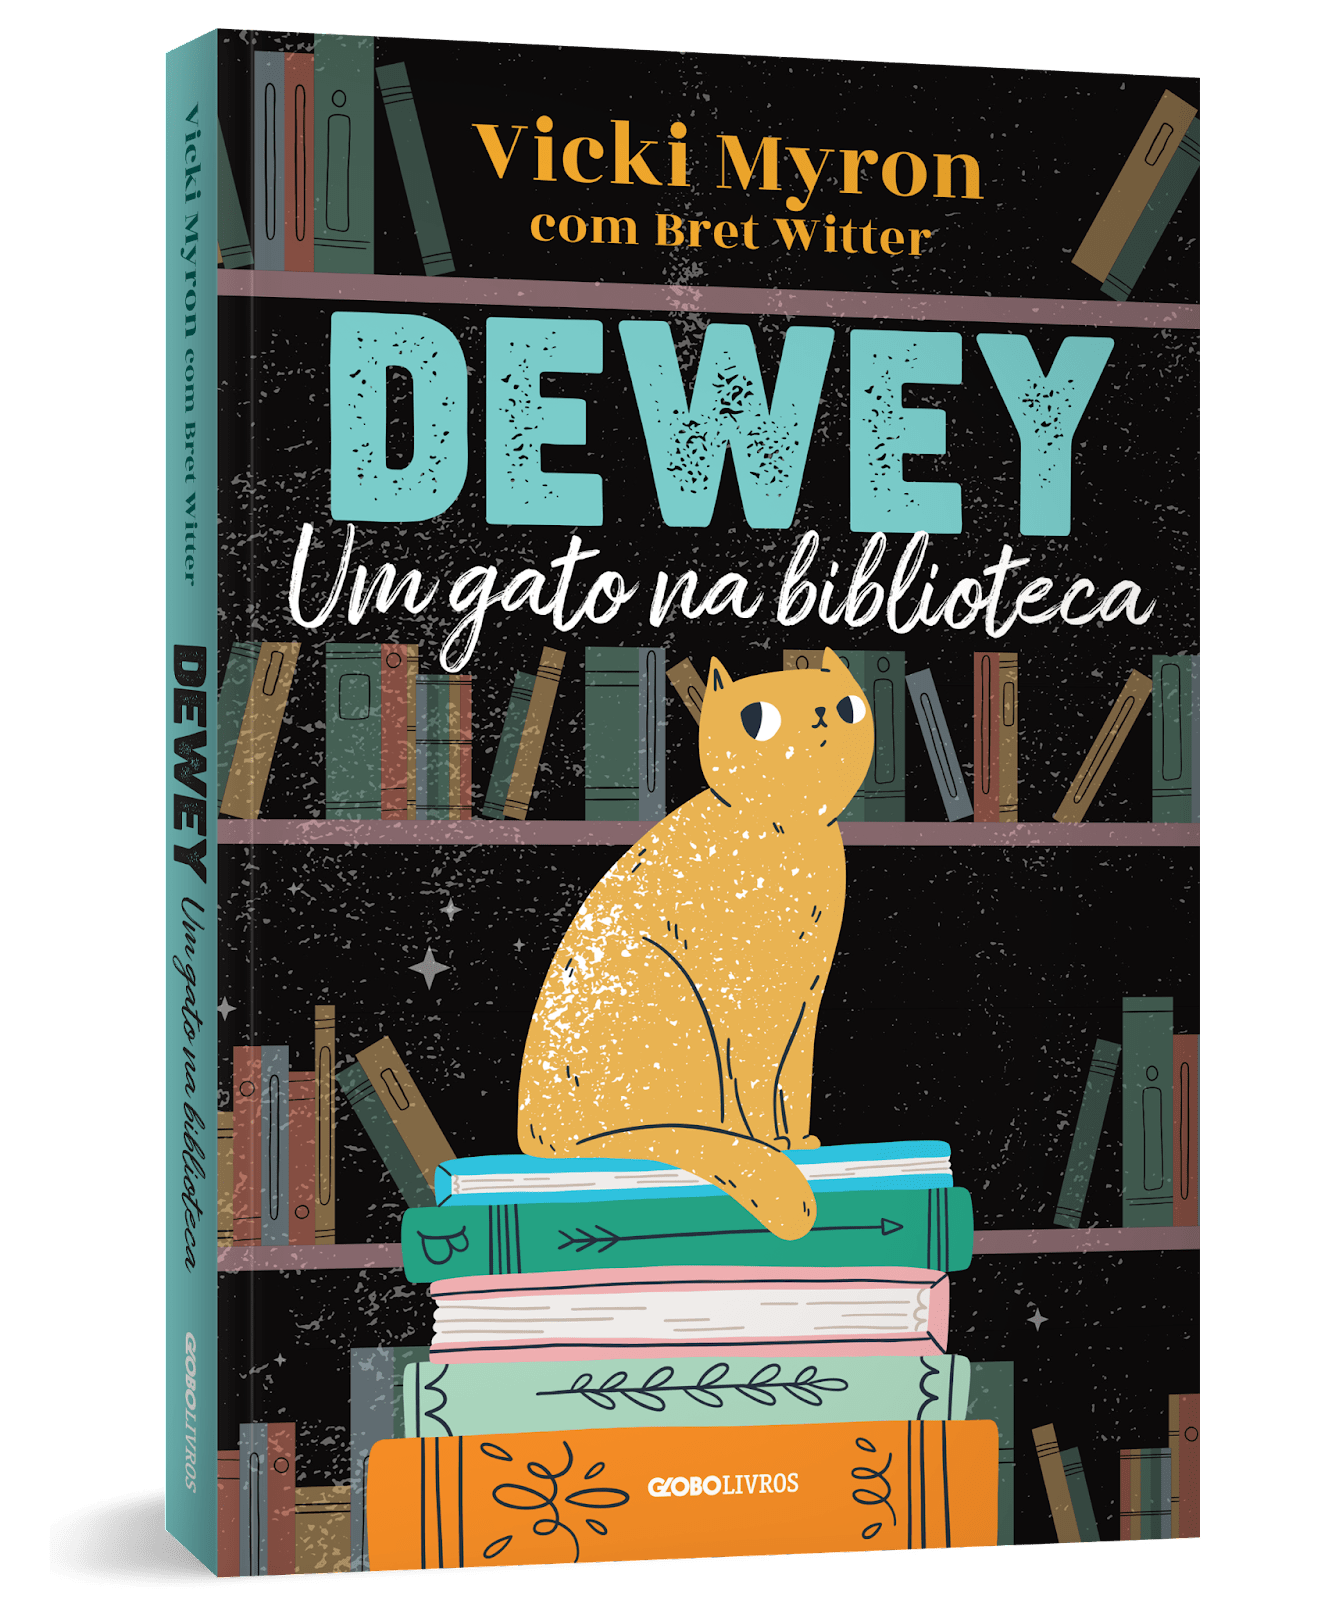 Gato que transformou uma cidade: Nova edição de “Dewey: um gato na biblioteca” emociona leitores